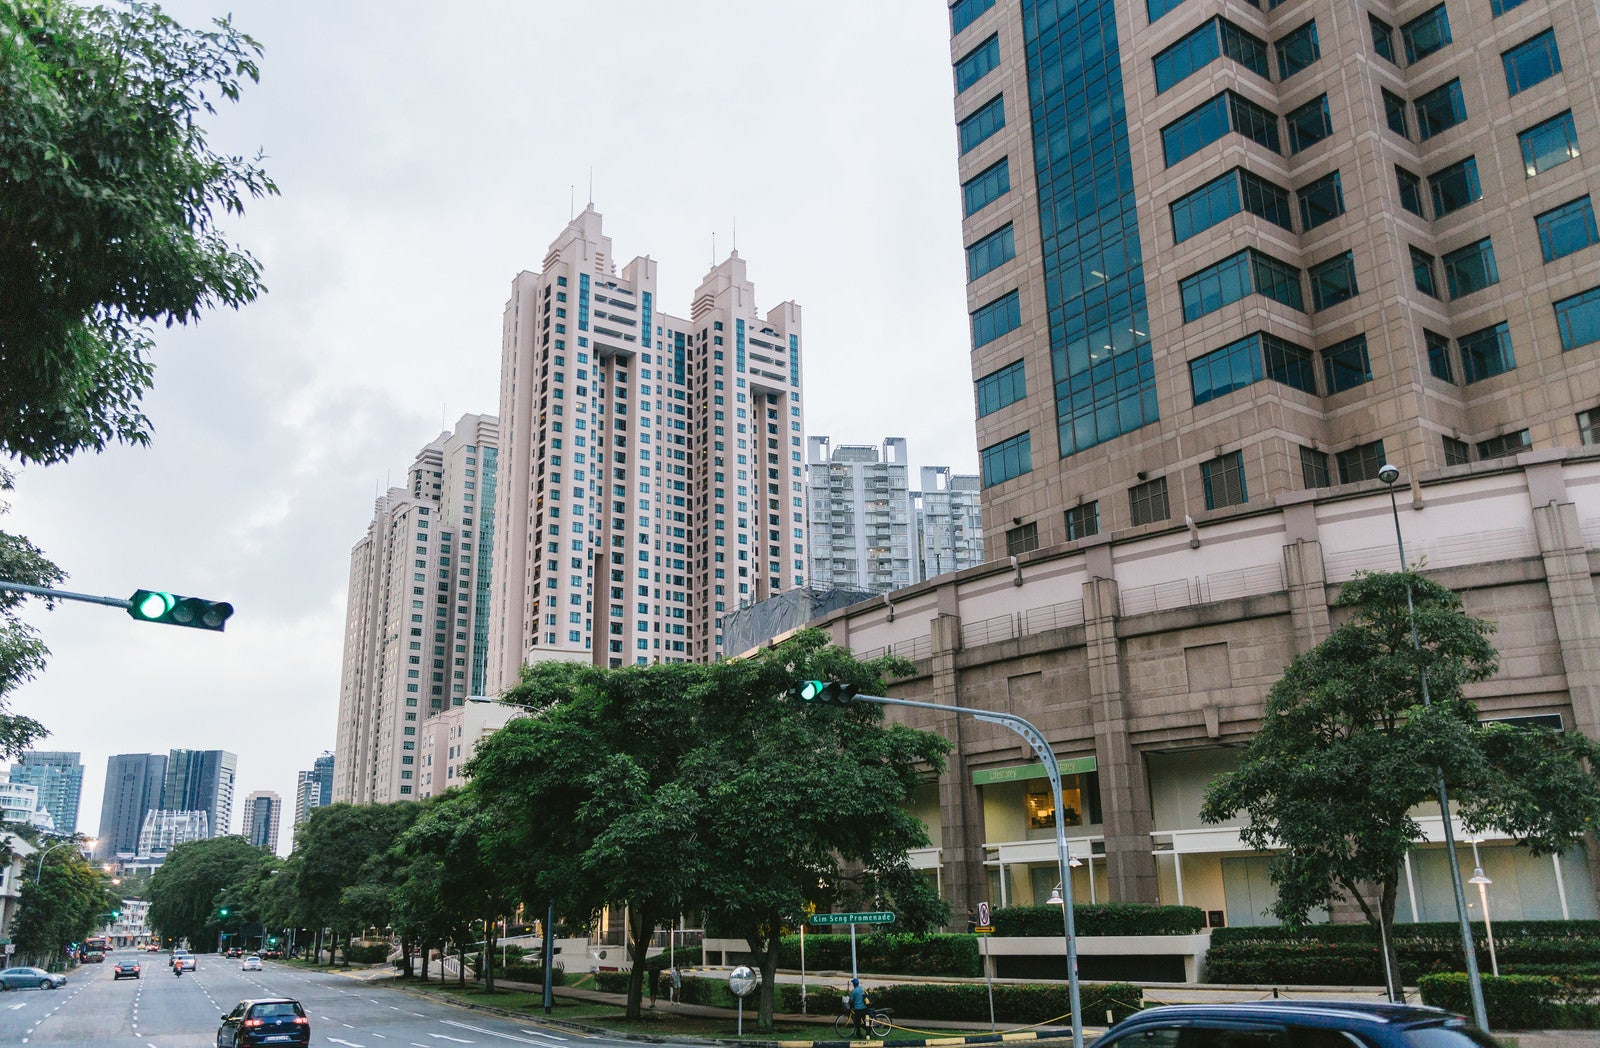 「高層マンションが立ち並ぶシンガポールの街並み」の写真